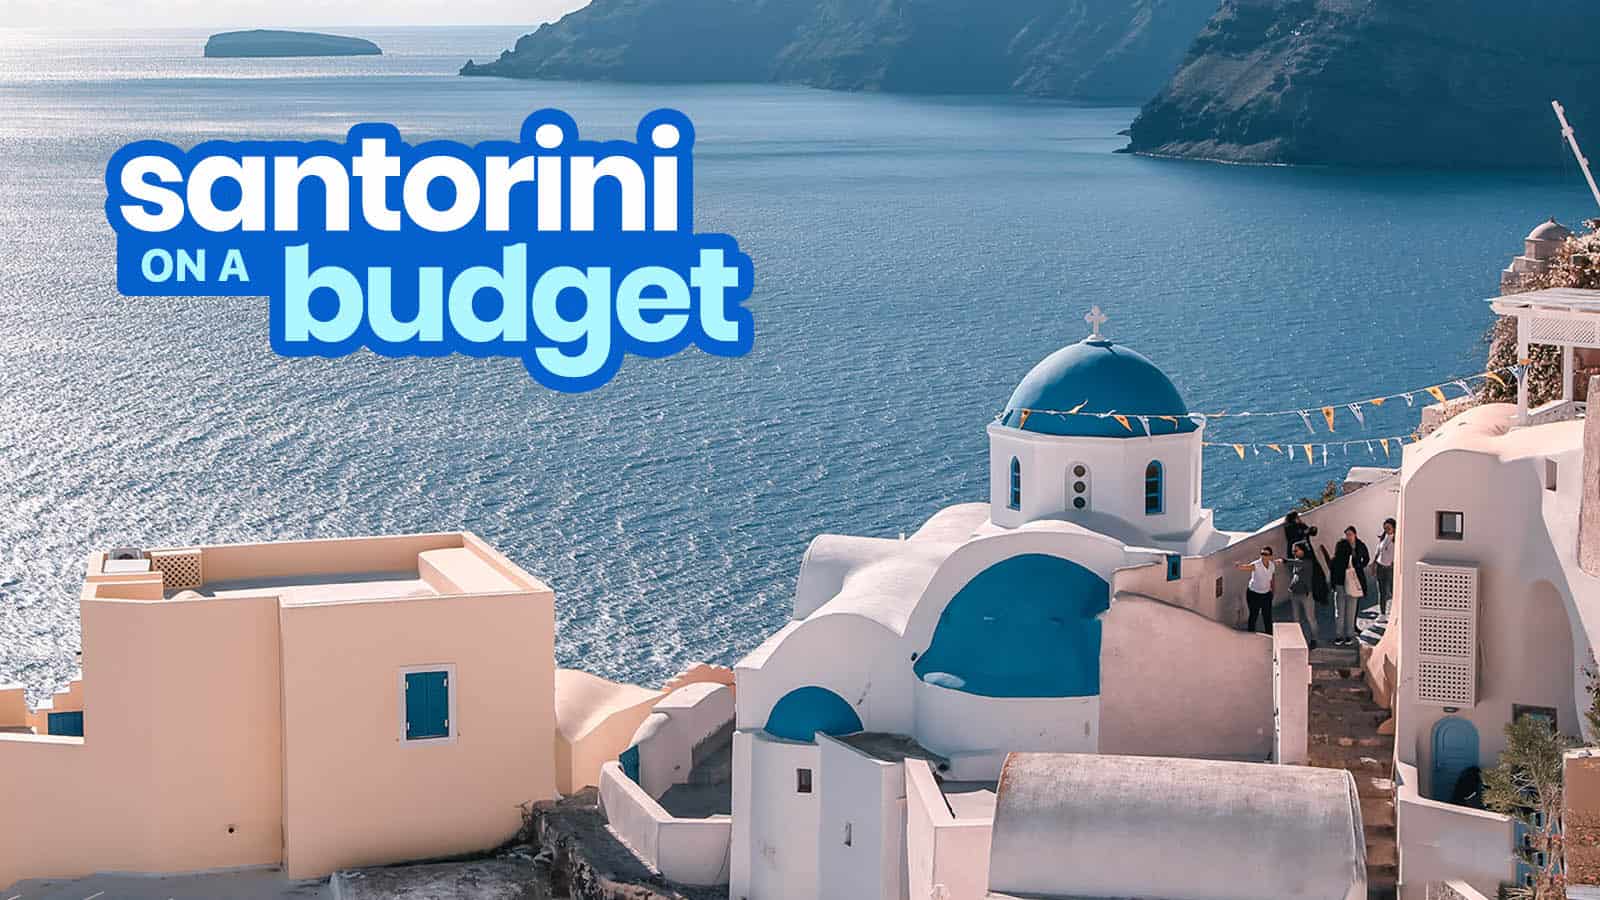  Cara Mengunjungi Santorini dengan Anggaran Terbatas